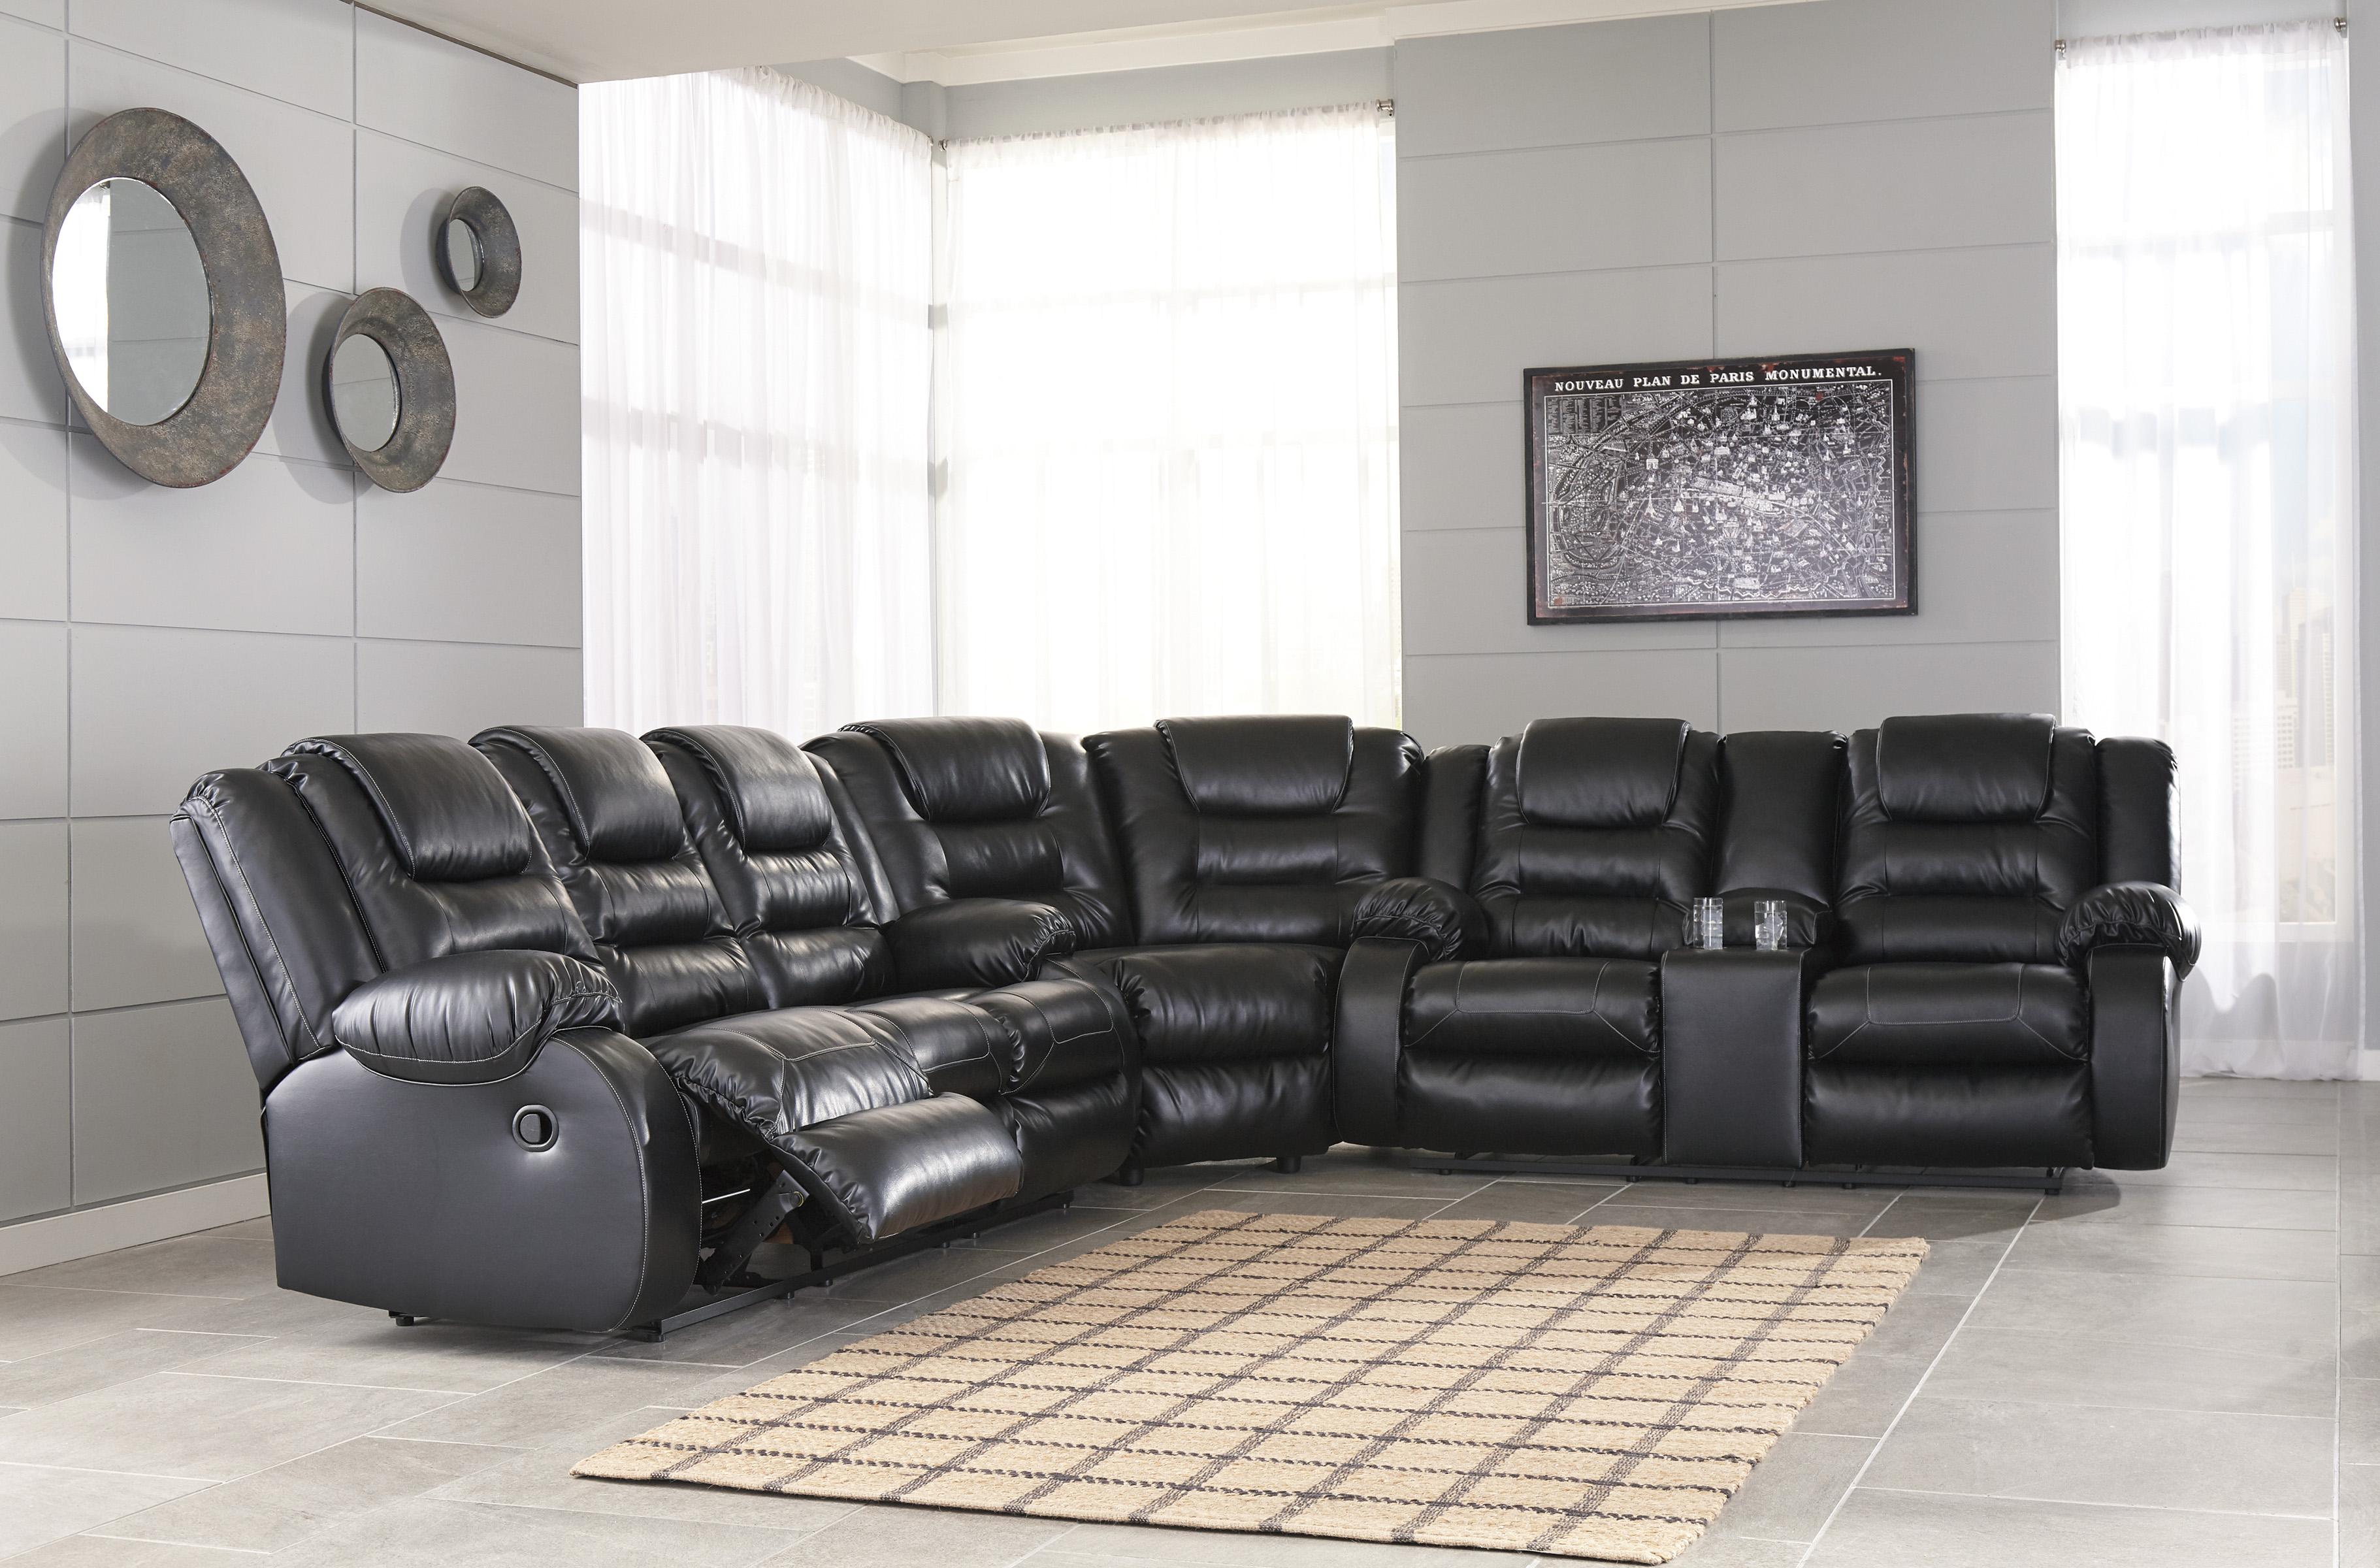 

    
Reclining Sofa Set 3Pcs Black Faux Leather Contemporary Ashley Vacherie
